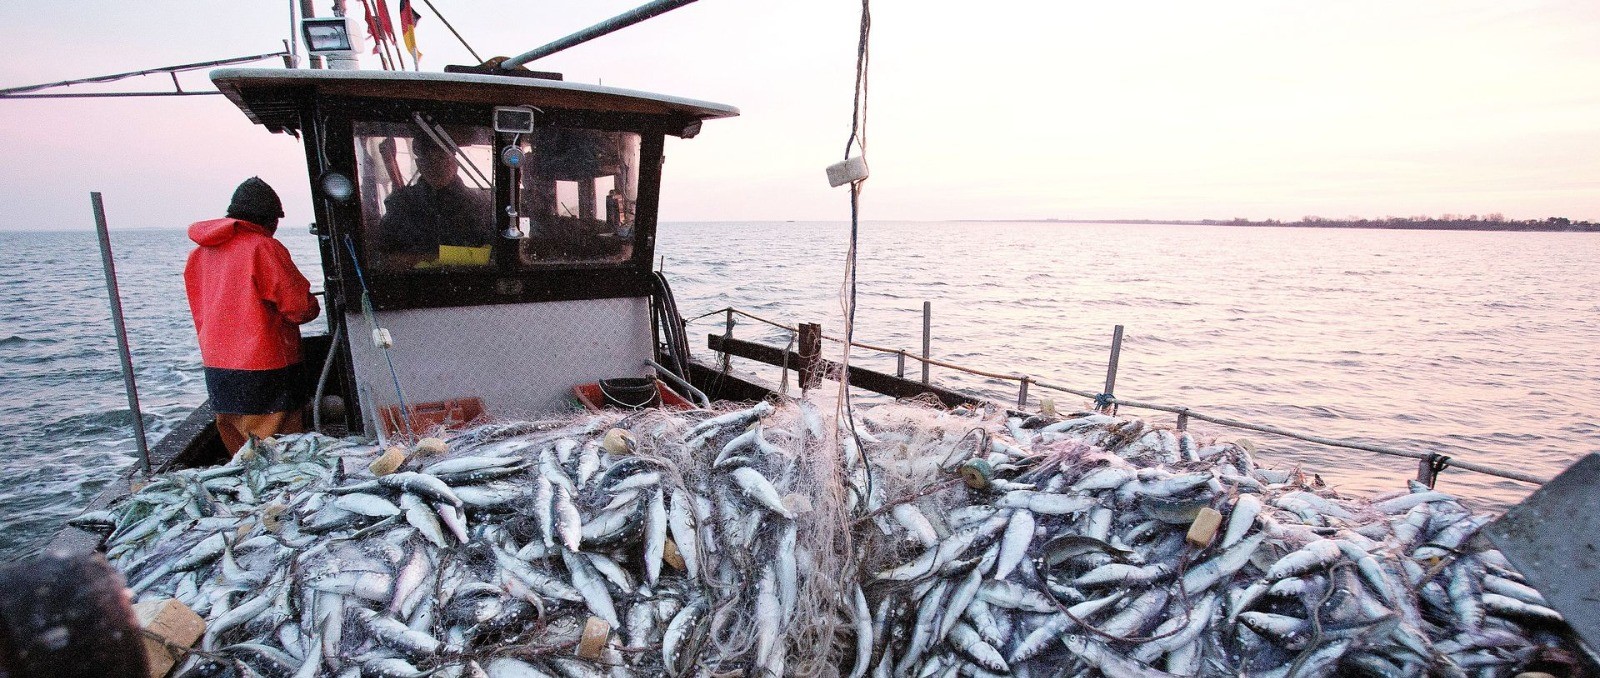 من المسؤول عن ارتكاب جرائم الإبادة الجماعية للثروة السمكية؟